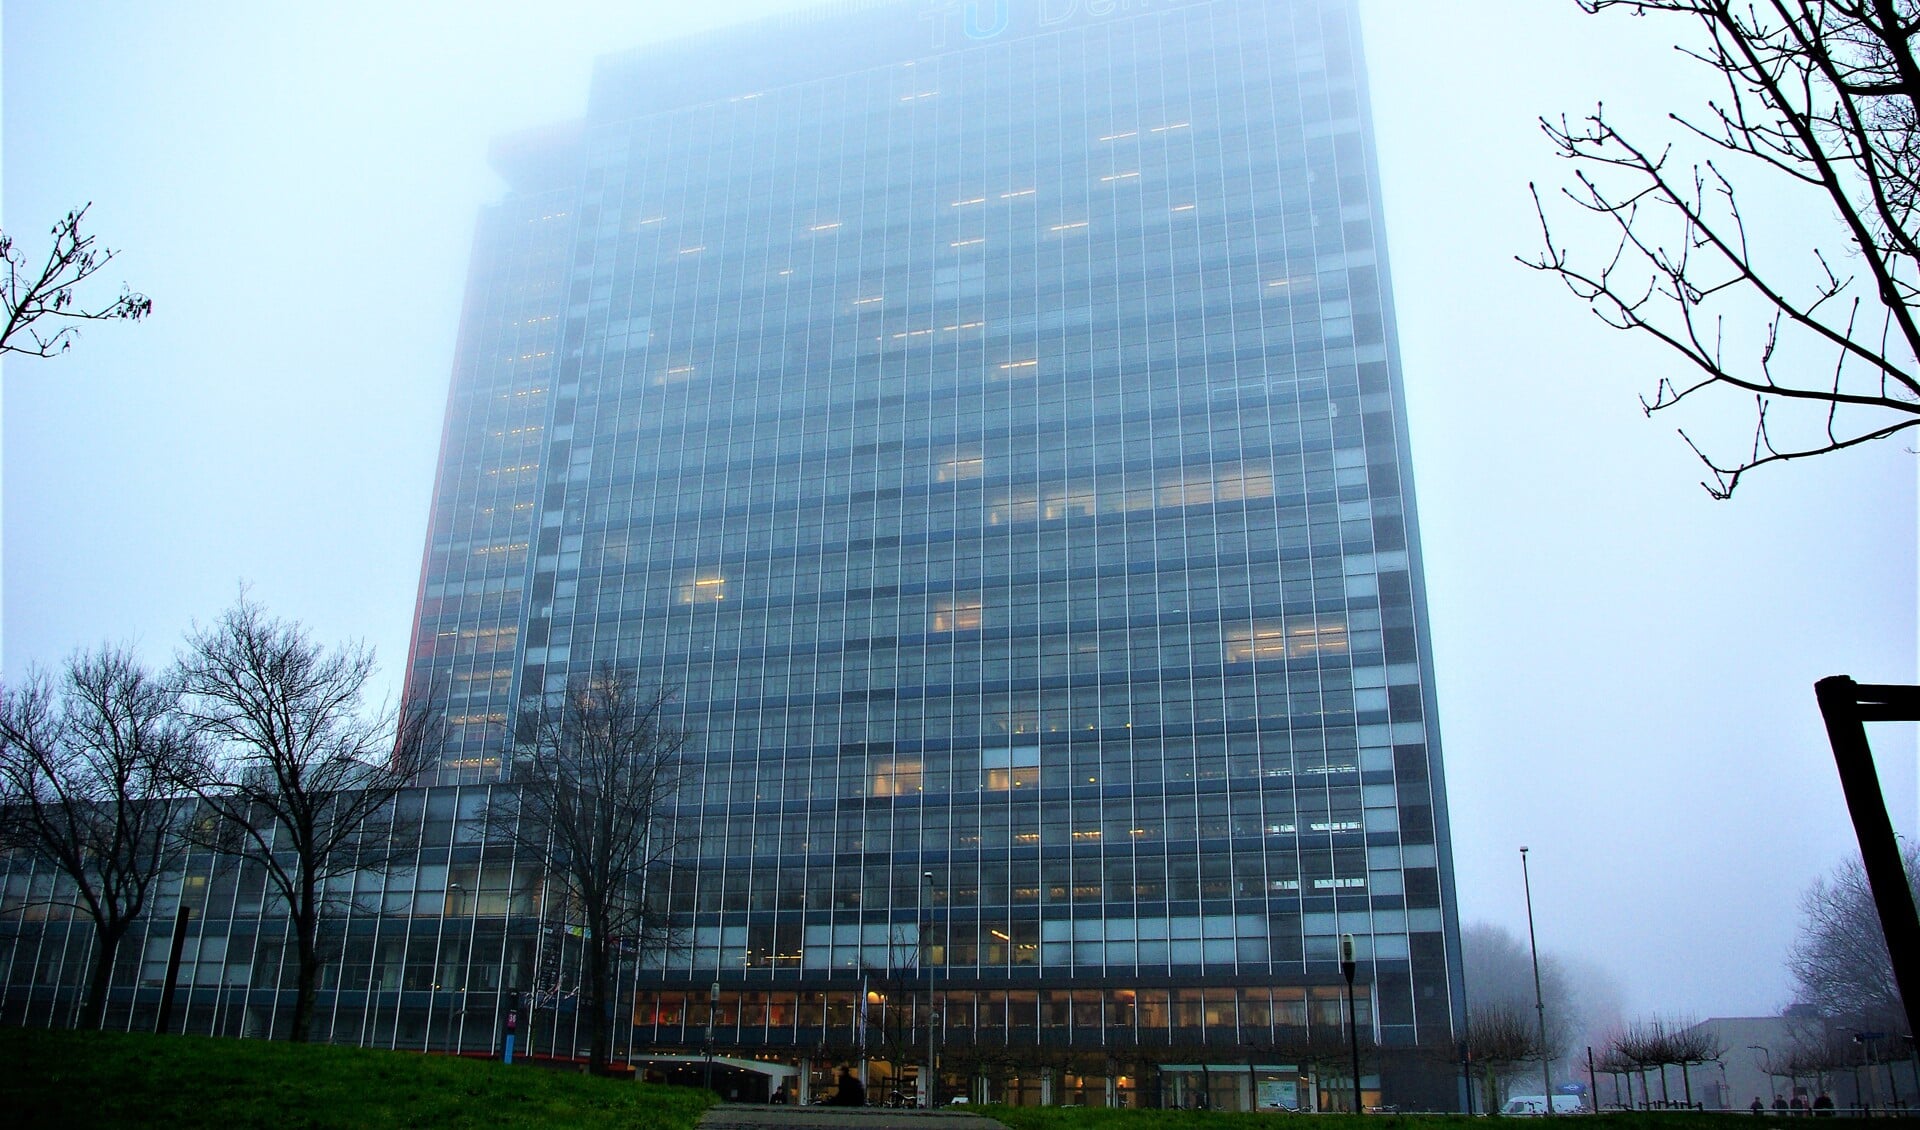 Het EWI-gebouw van de TU Delft, in nevelen gehuld.